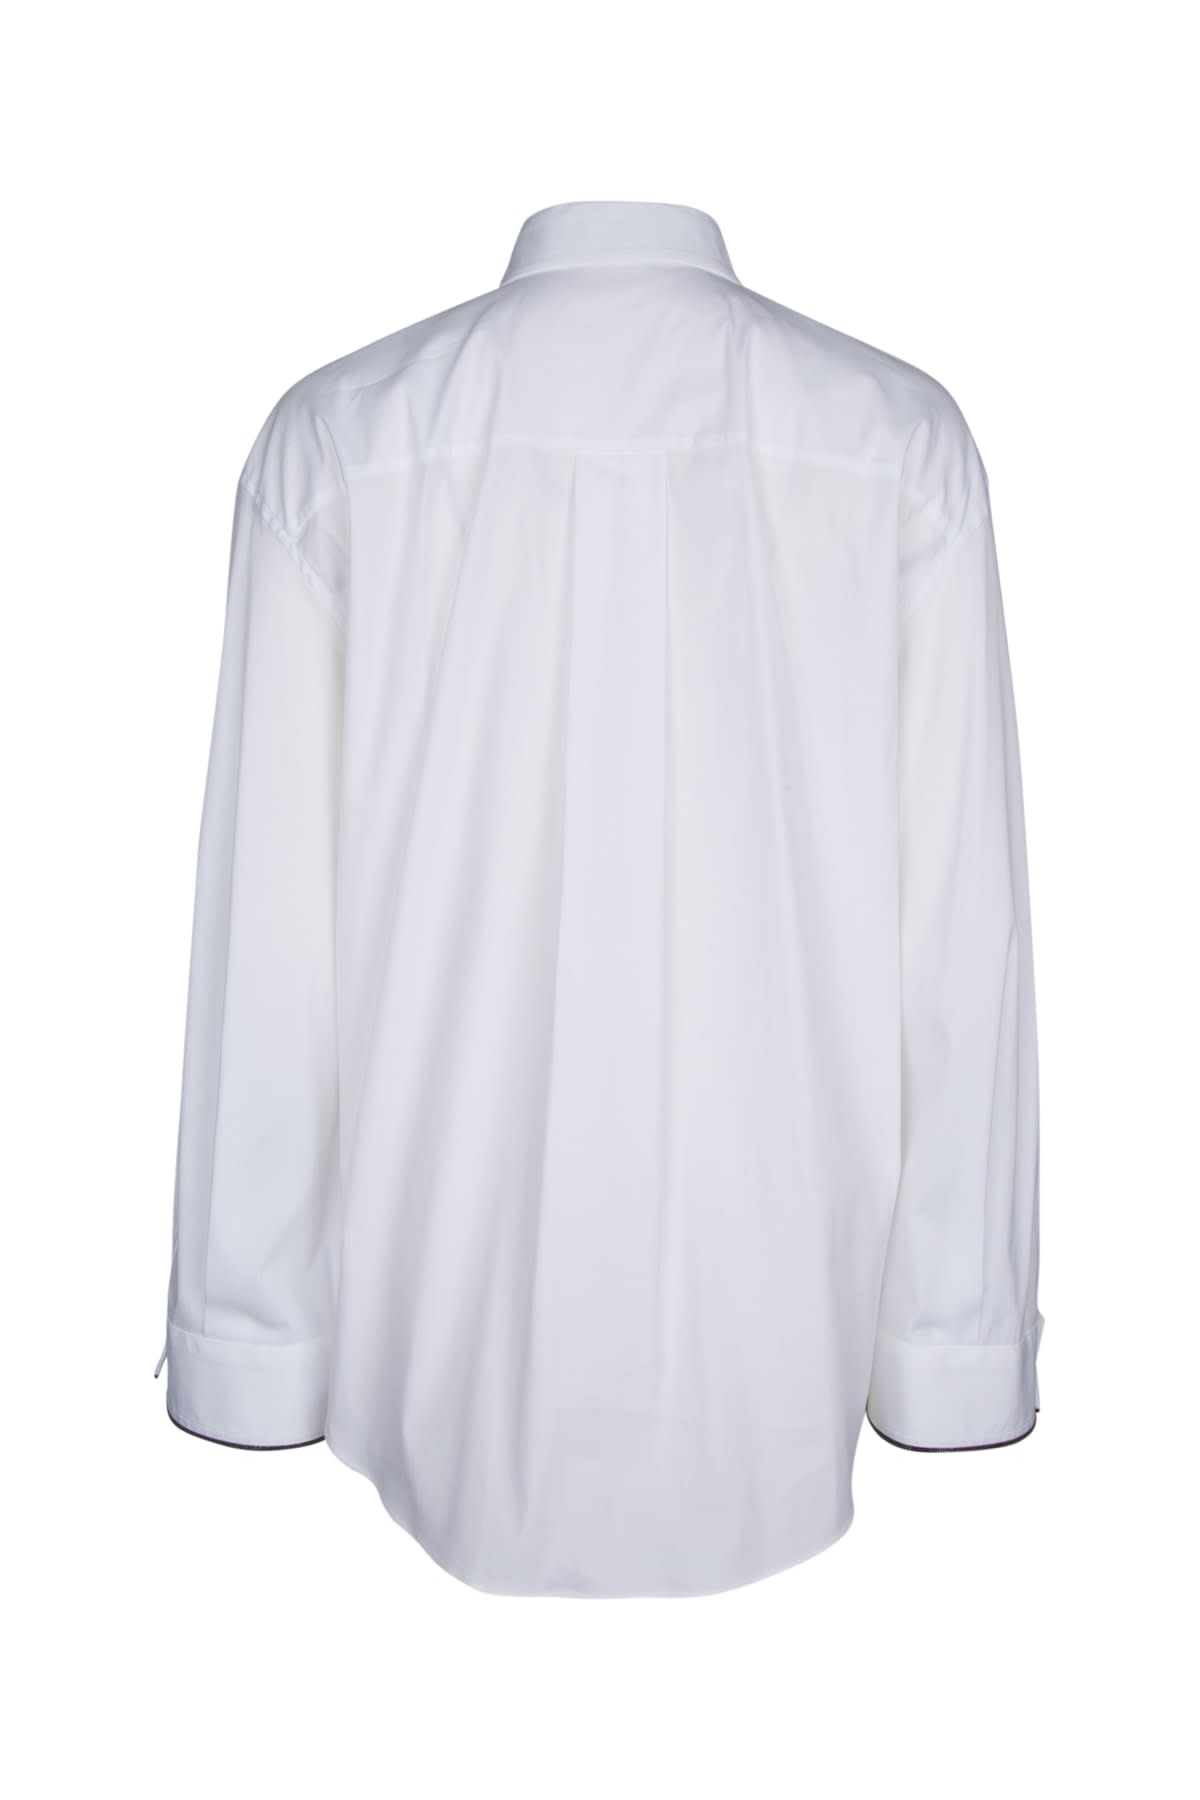 Brunello Cucinelli Camicia In Bianco